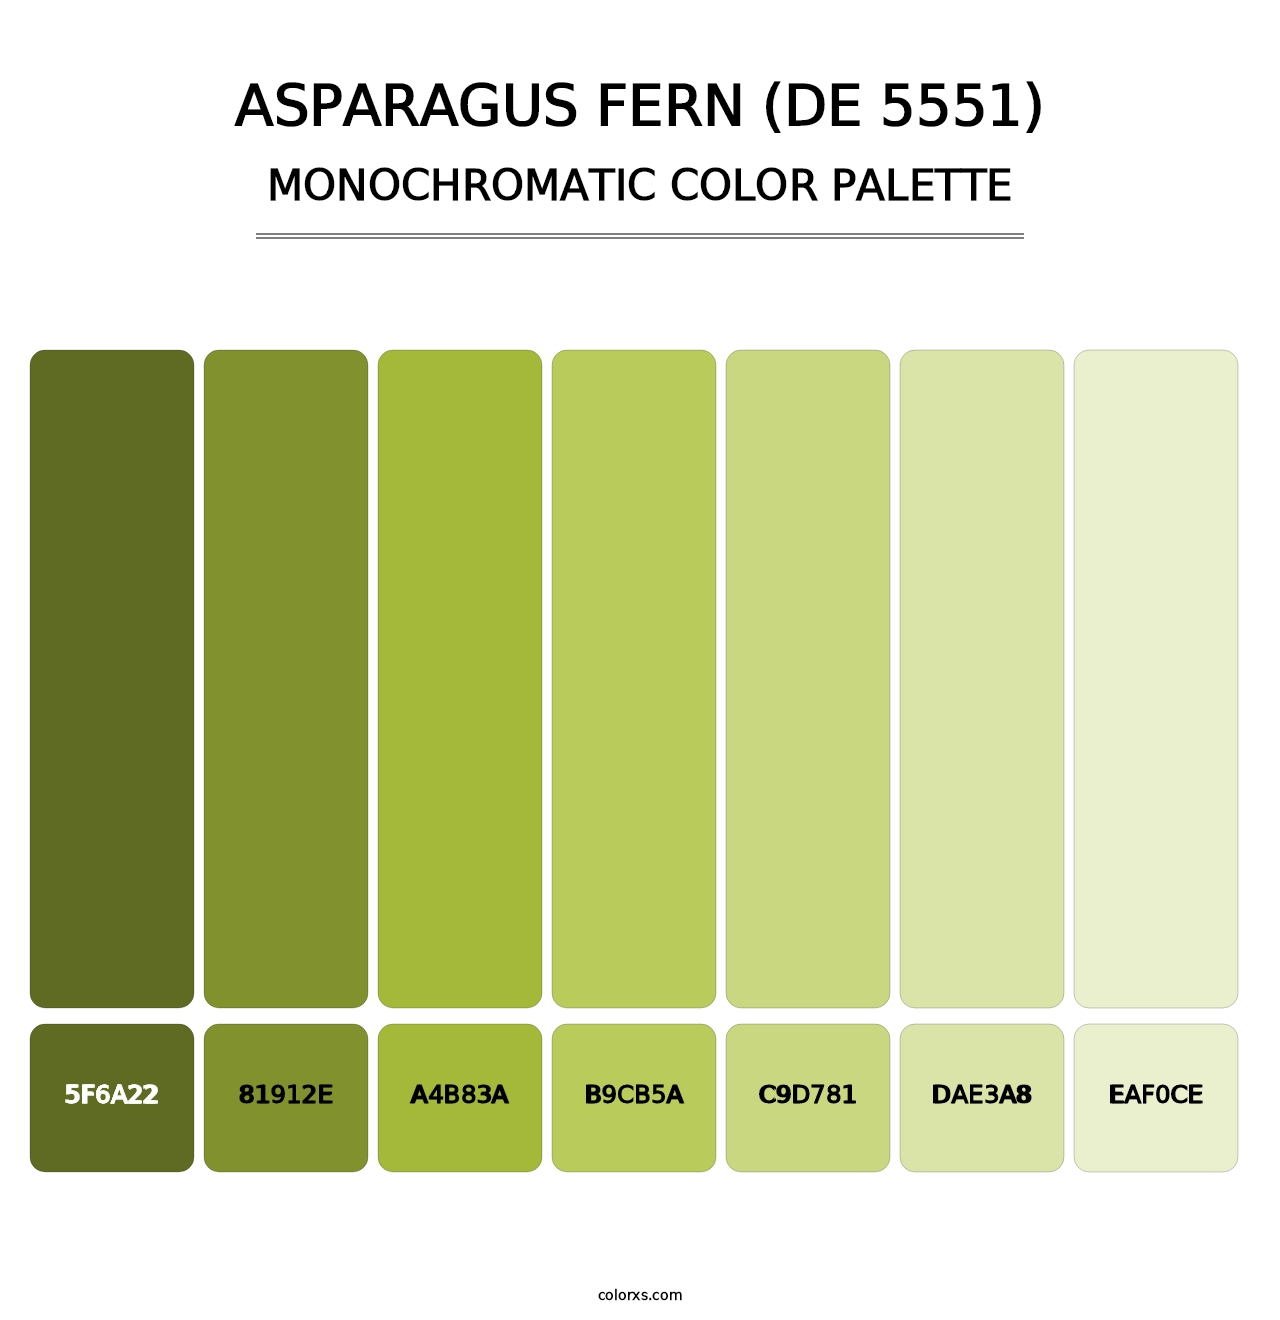 Asparagus Fern (DE 5551) - Monochromatic Color Palette